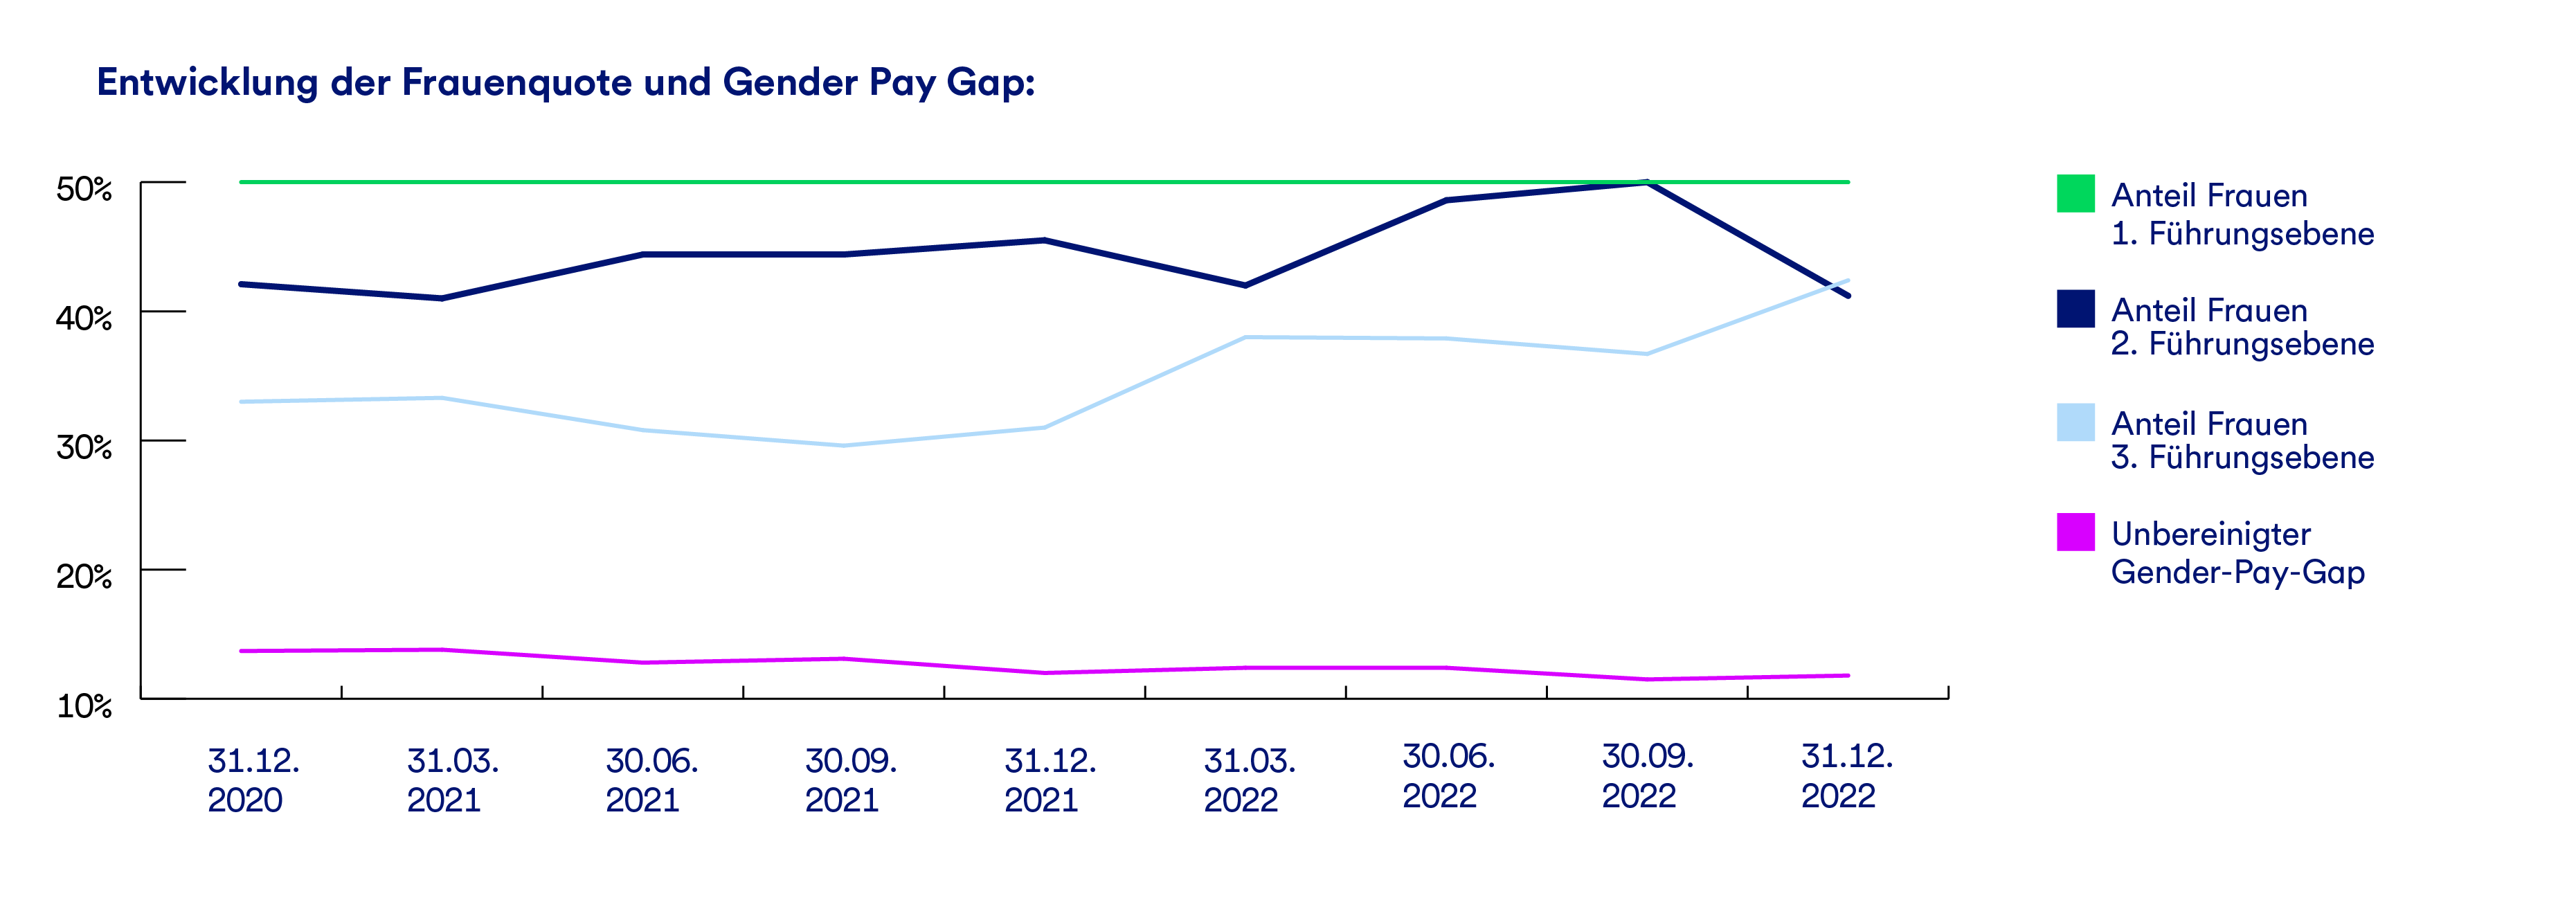 Ein Graph, der die Entwicklung der Frauenquote und des Gender-Pay-Gaps darstellt 